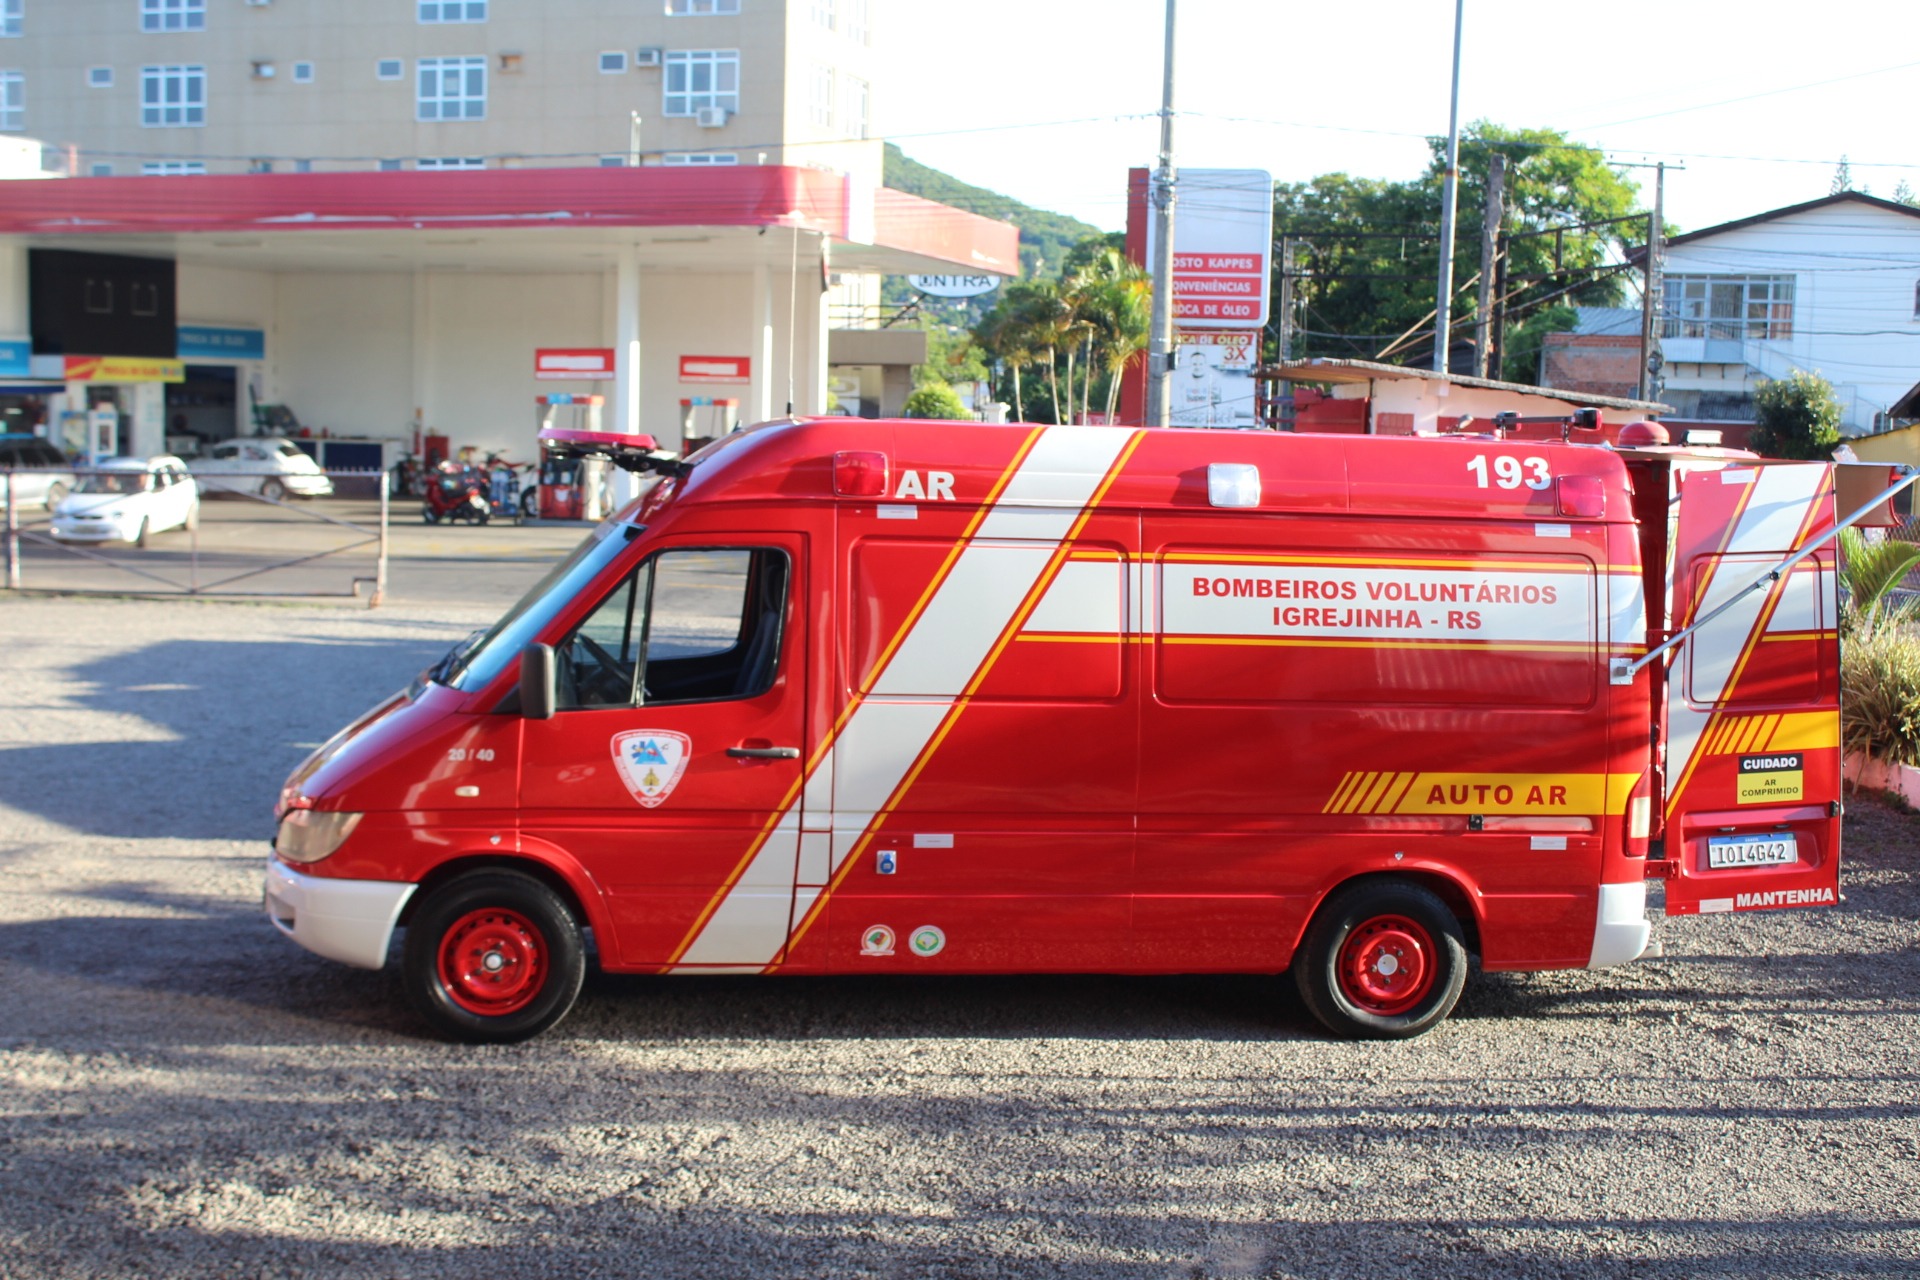 Auto ar, eículo que serve de apoio para grandes operações de incêndio Foto: Lilian Moraes